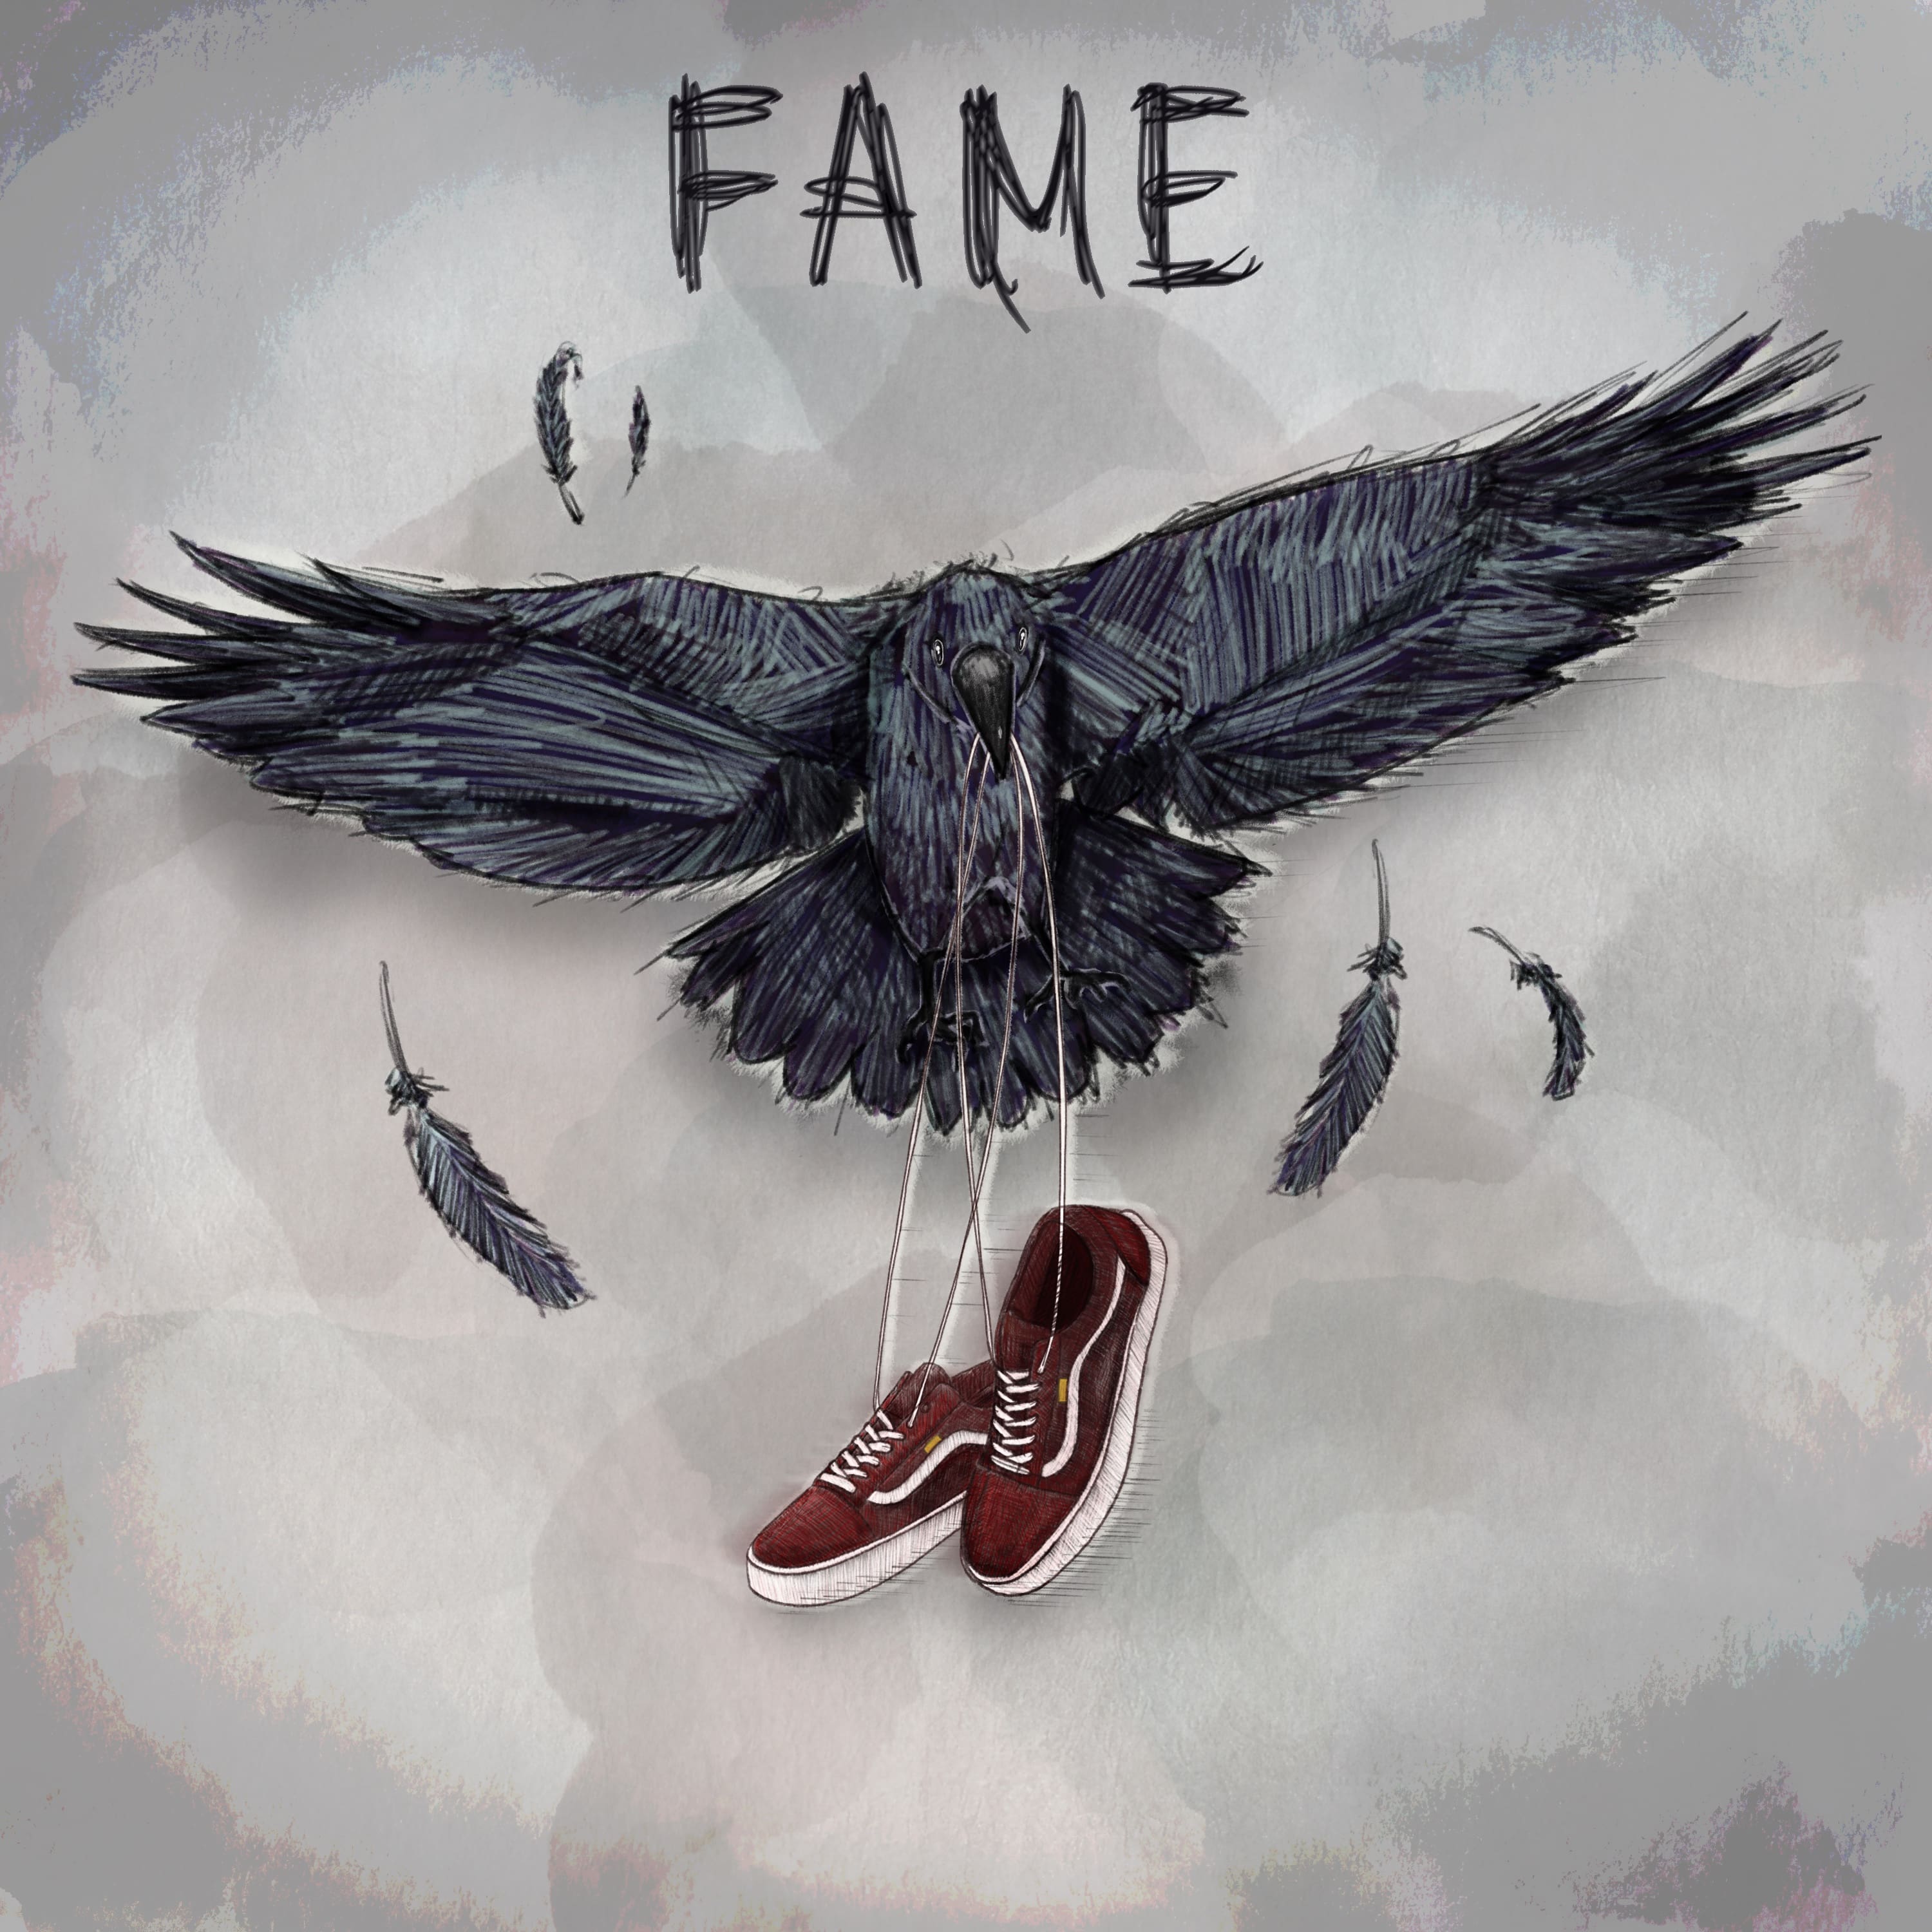 Fame, il nuovo ep degli Urbania [Recensione] 10